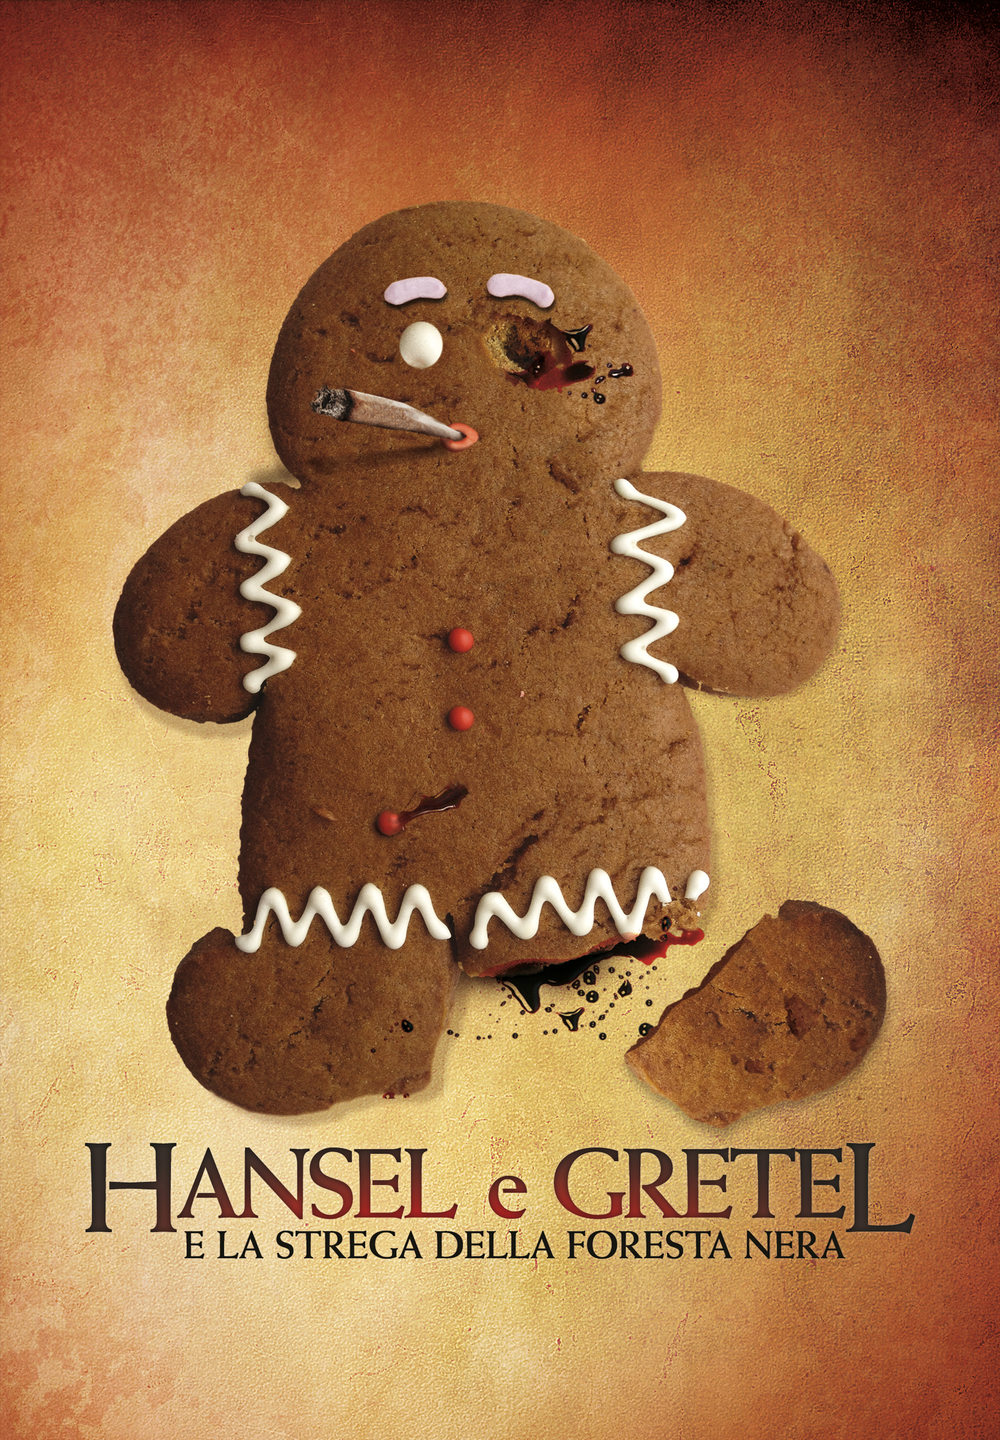 Hansel e Gretel e la Strega della foresta nera [HD] (2014)